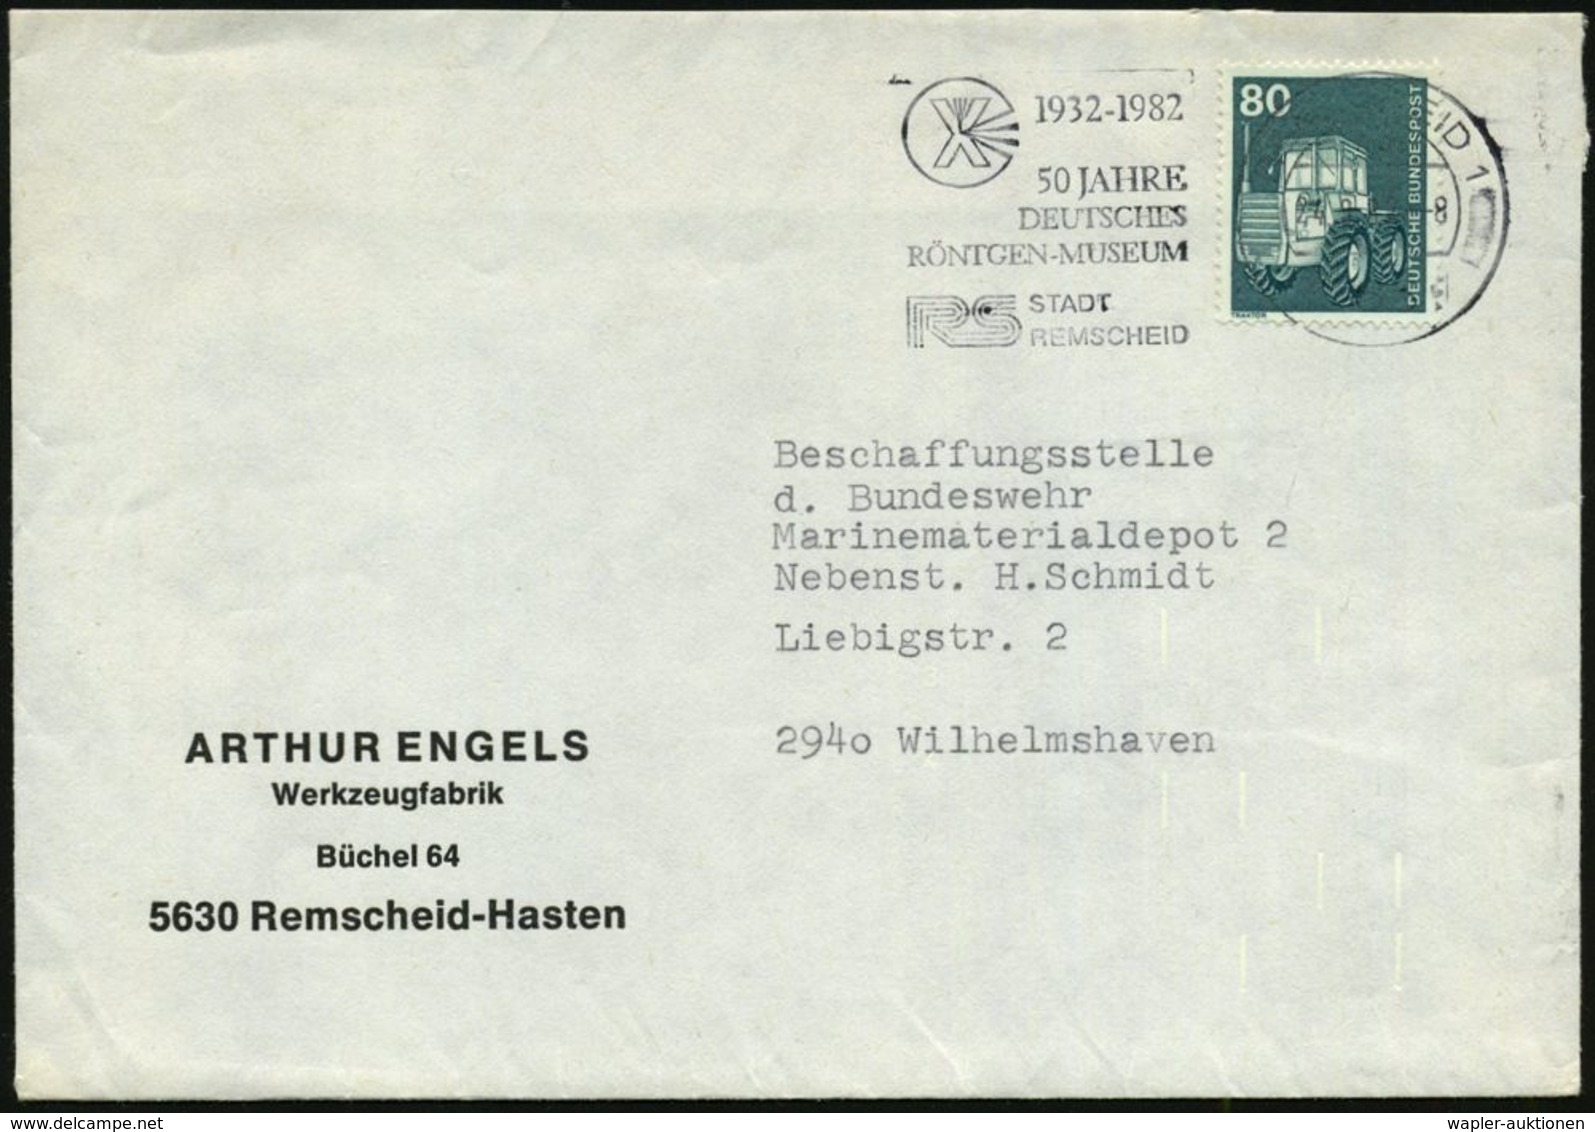 BERÜHMTE MEDIZINER & ÄRZTE : 5630 REMSCHEID 1/ 1932-1982/ 50 JAHRE/ DEUTSCHES/ RÖNTGEN-MUSEUM 1982 (24.8.) Jubil.-MWSt = - Médecine